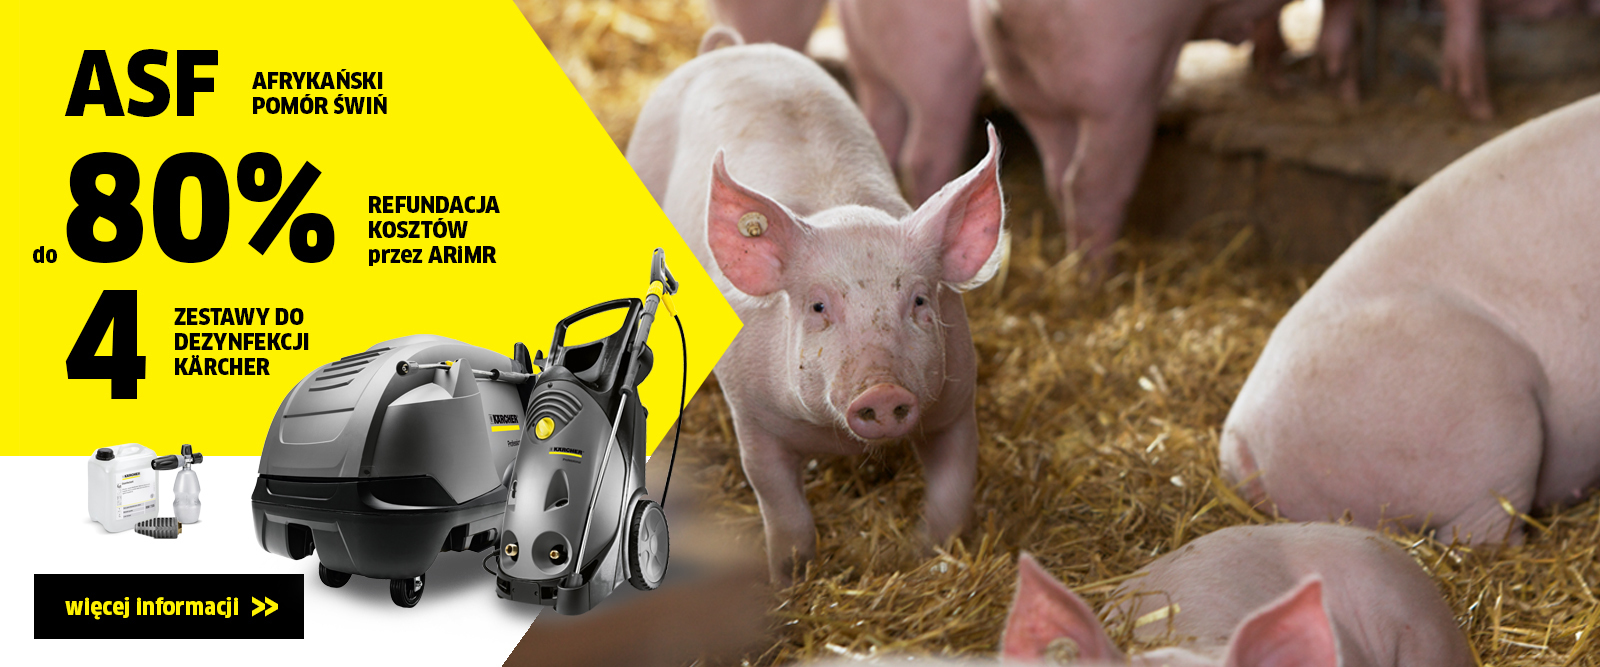 baner akcji Afrykański pomór świń - dopłaty ARiMR